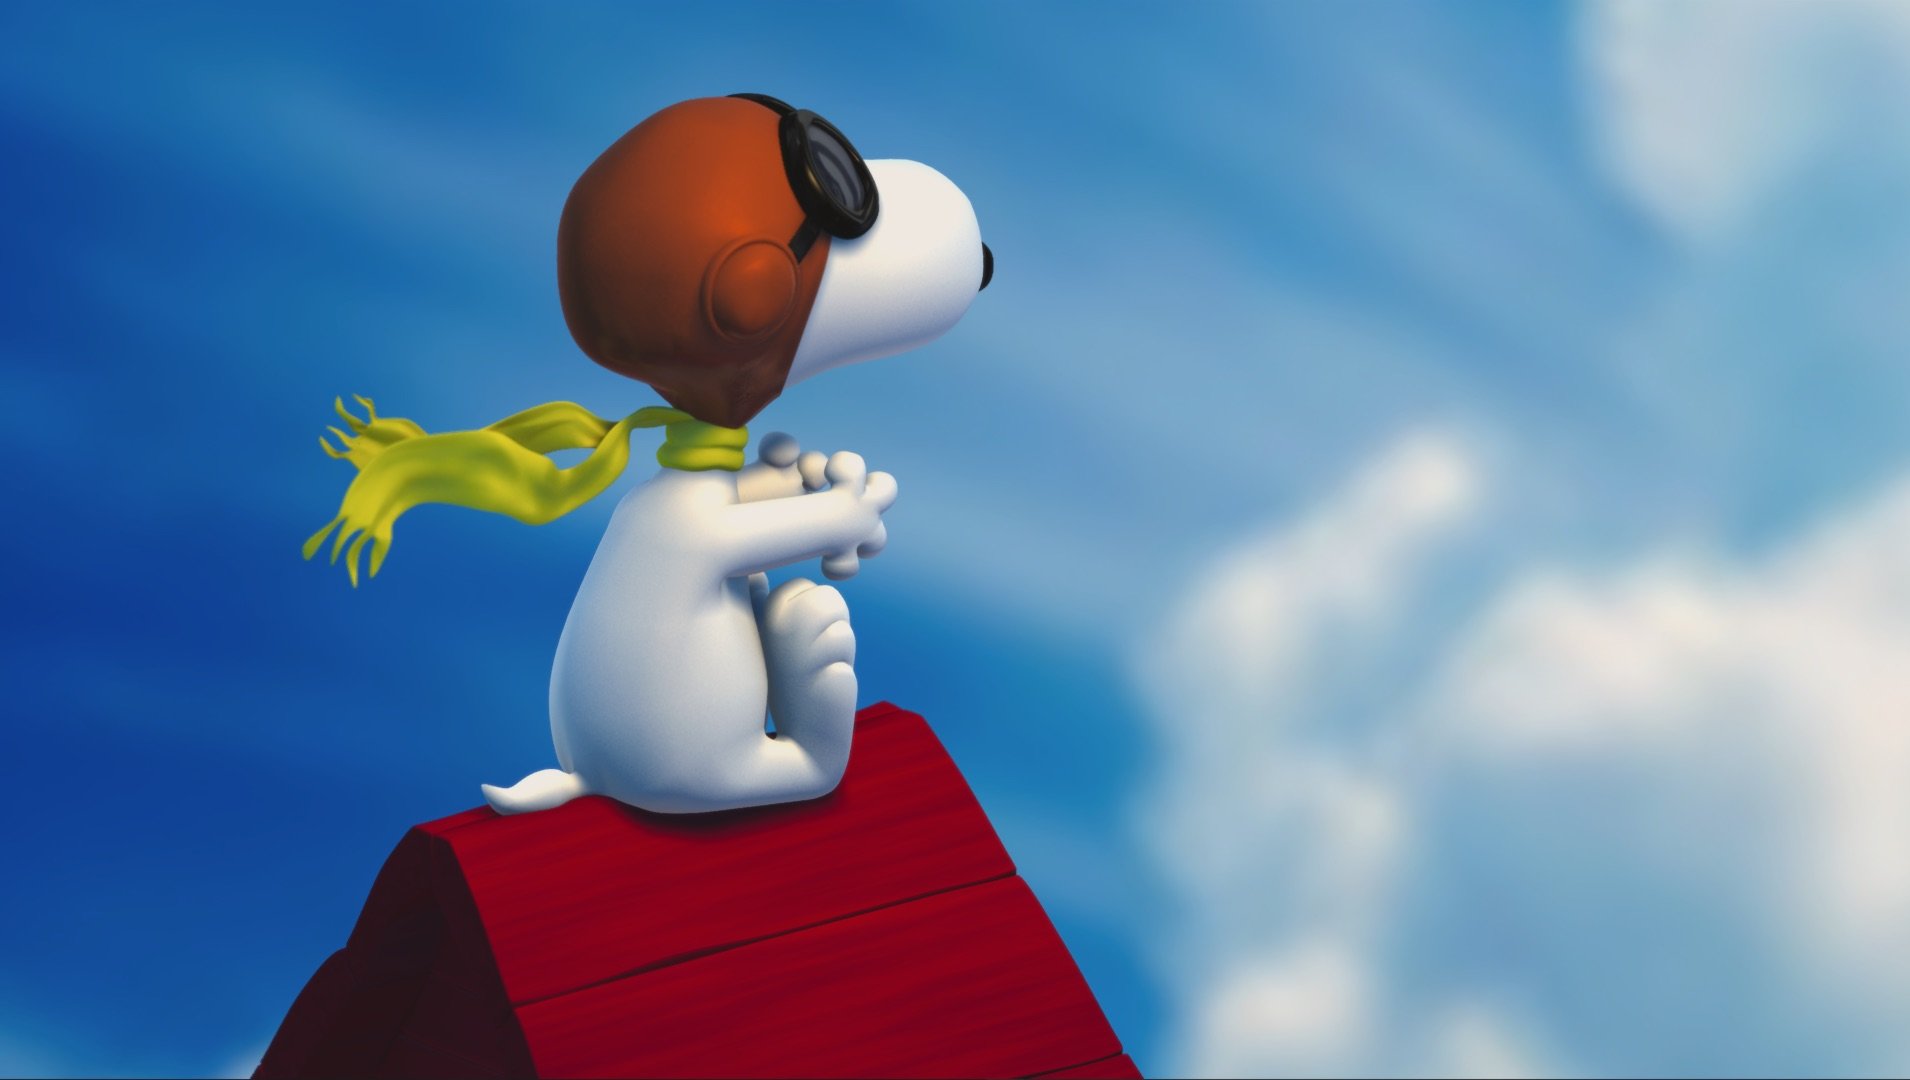 Snoopy_03_render.jpg